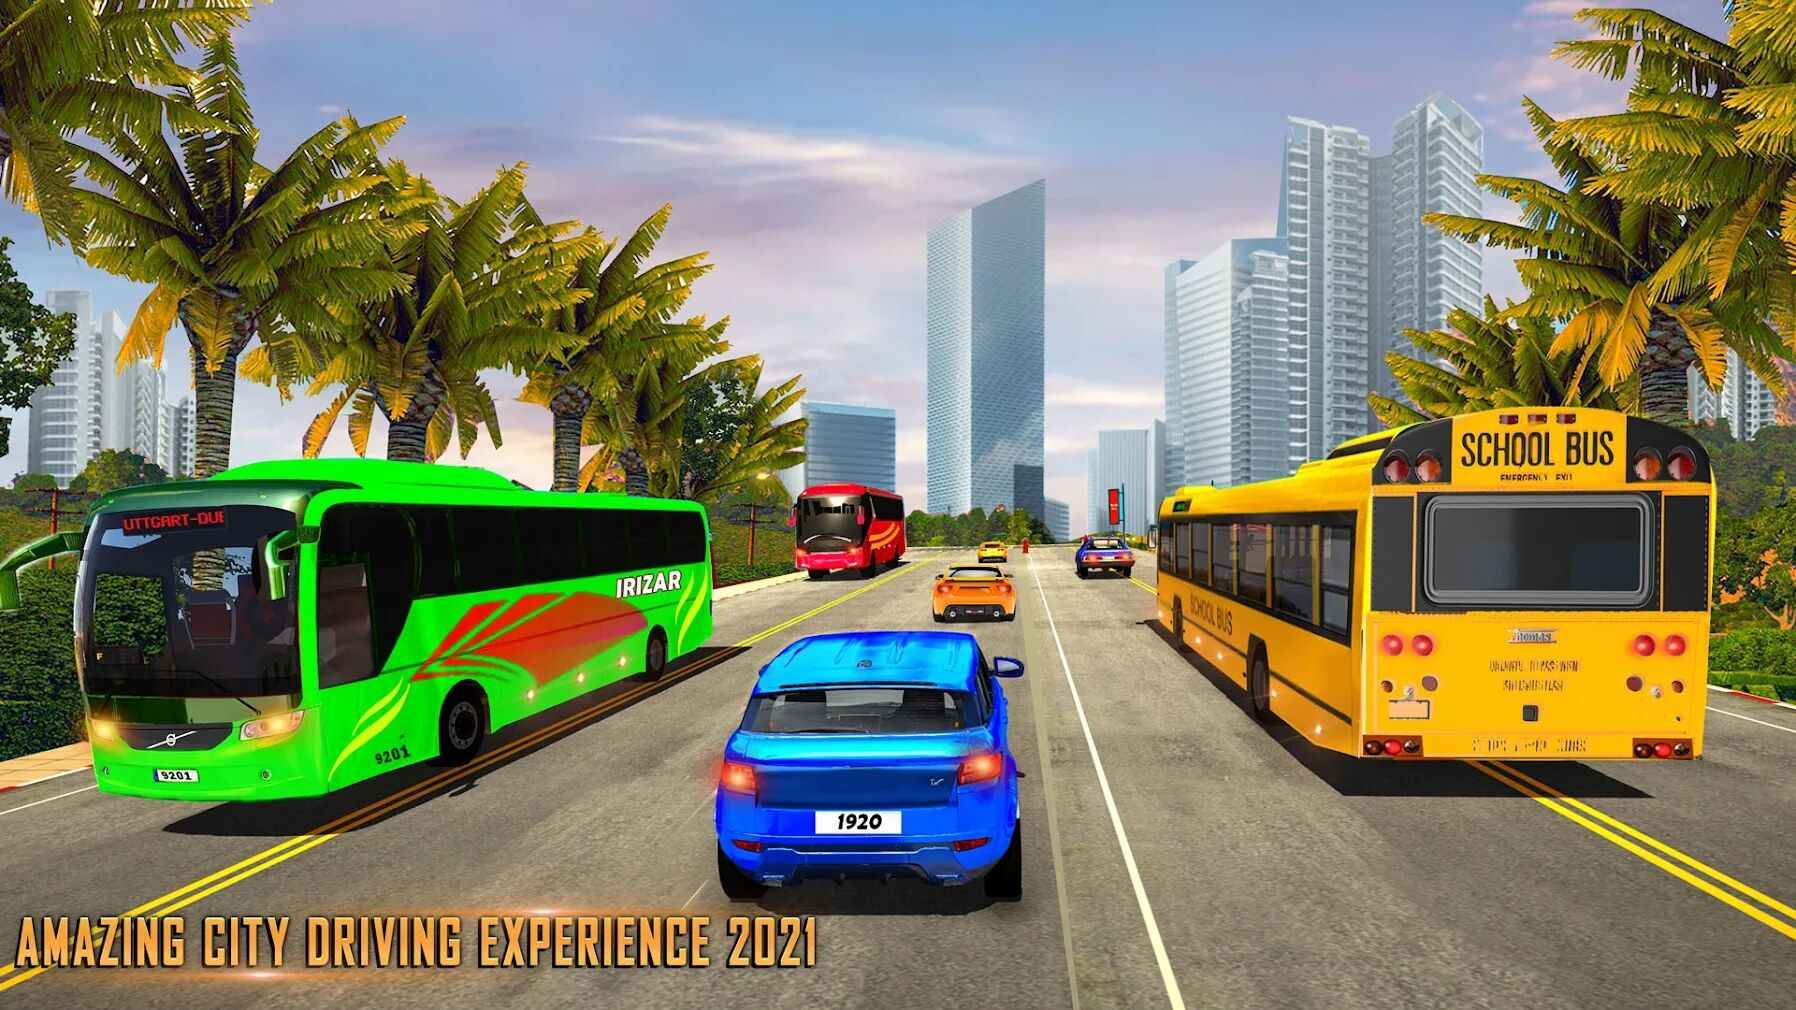 现代巴士模拟